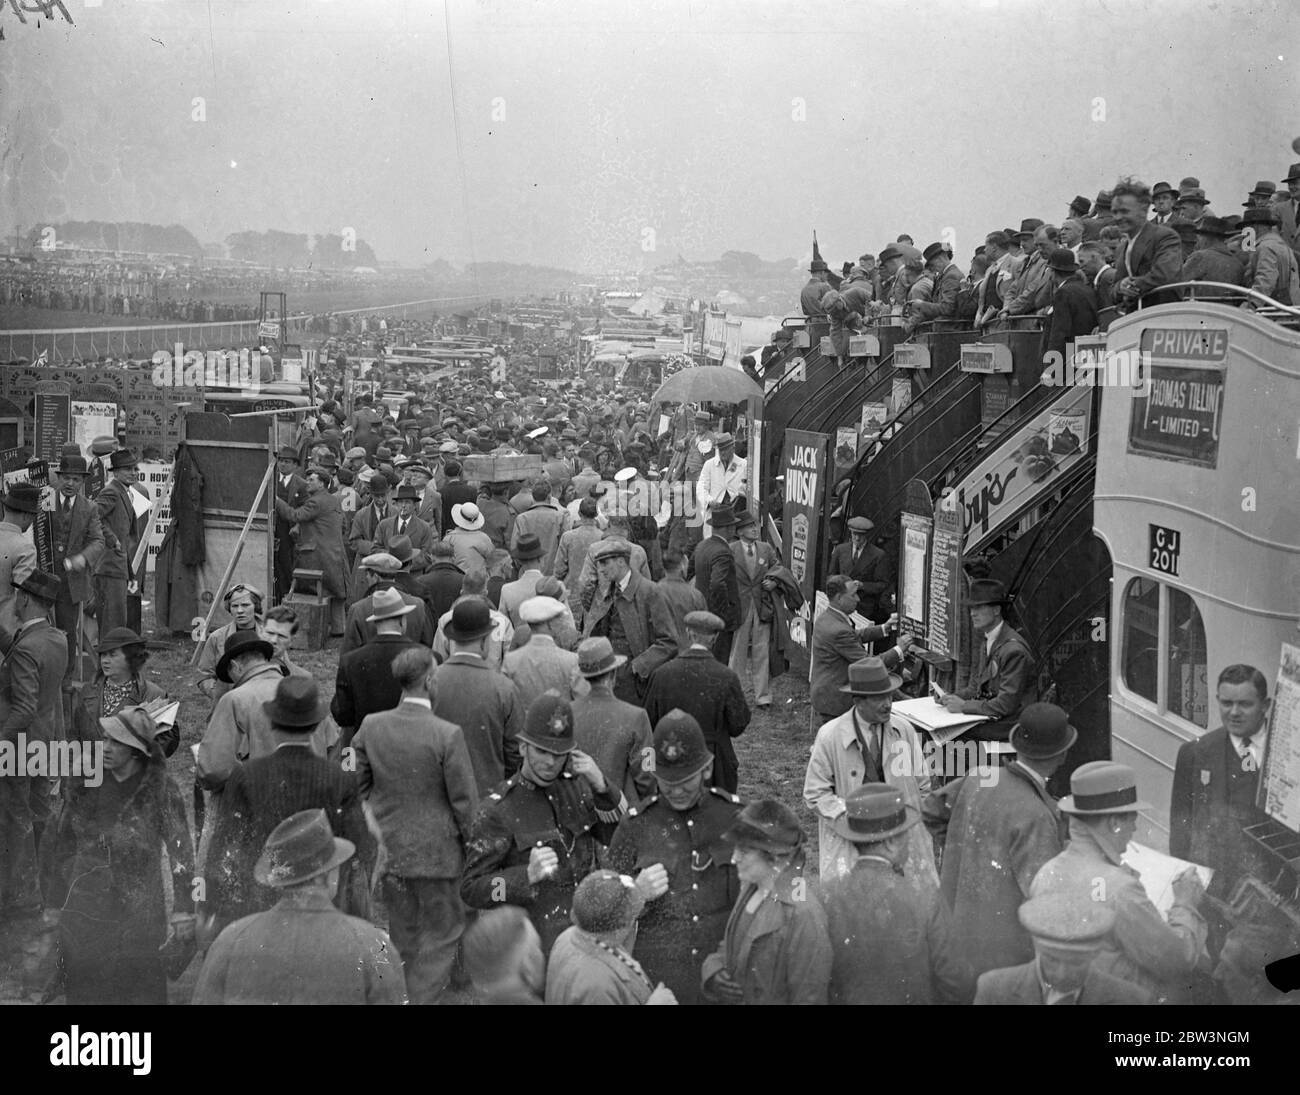 Busse an den Tribünen für die Menschenmassen in Epsom. Große Menschenmengen, von denen viele die ganze Nacht gewartet hatten, um ihre Plätze zu behalten, packte die Derby Kurs in Epsom. Busse, die Rennfahrer auf den Platz gebracht hatte, wurden als Tribünen verwendet. Foto zeigt, Busse als Tribünen für die Massen auf dem Kurs in Epsom verwendet. 27 Mai 1936 Stockfoto